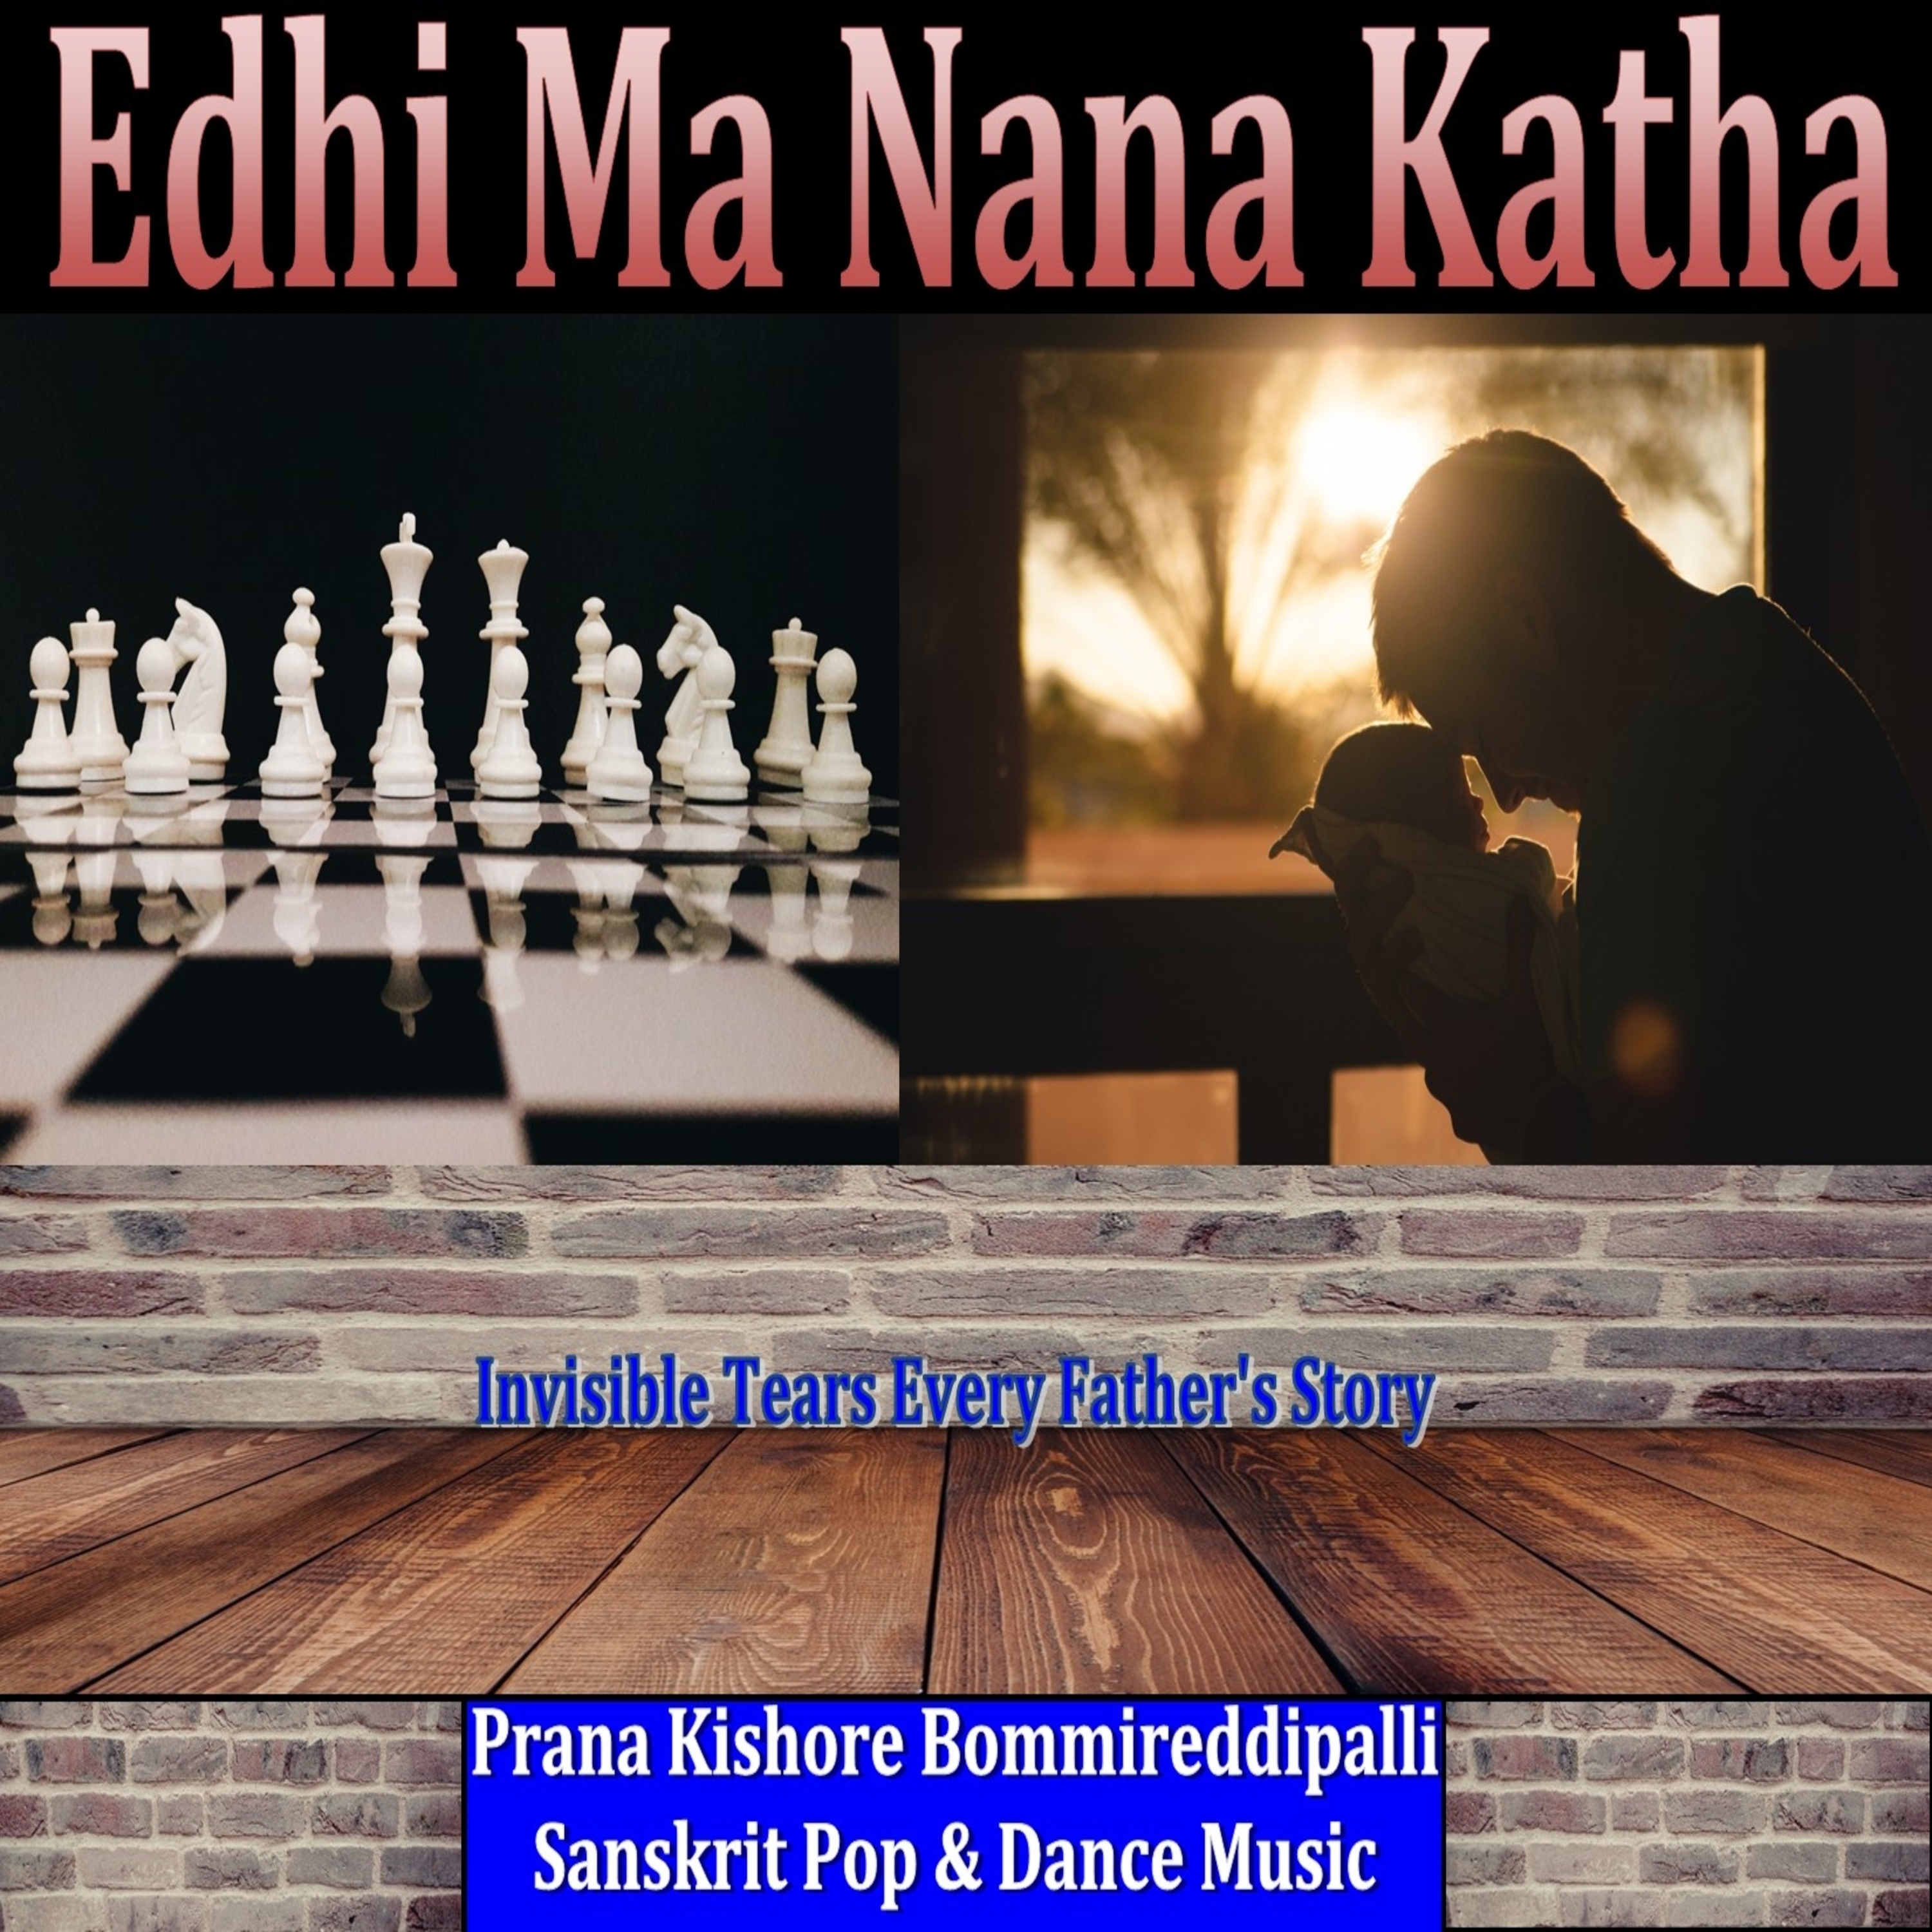 Edhi Ma Nana Katha 3000